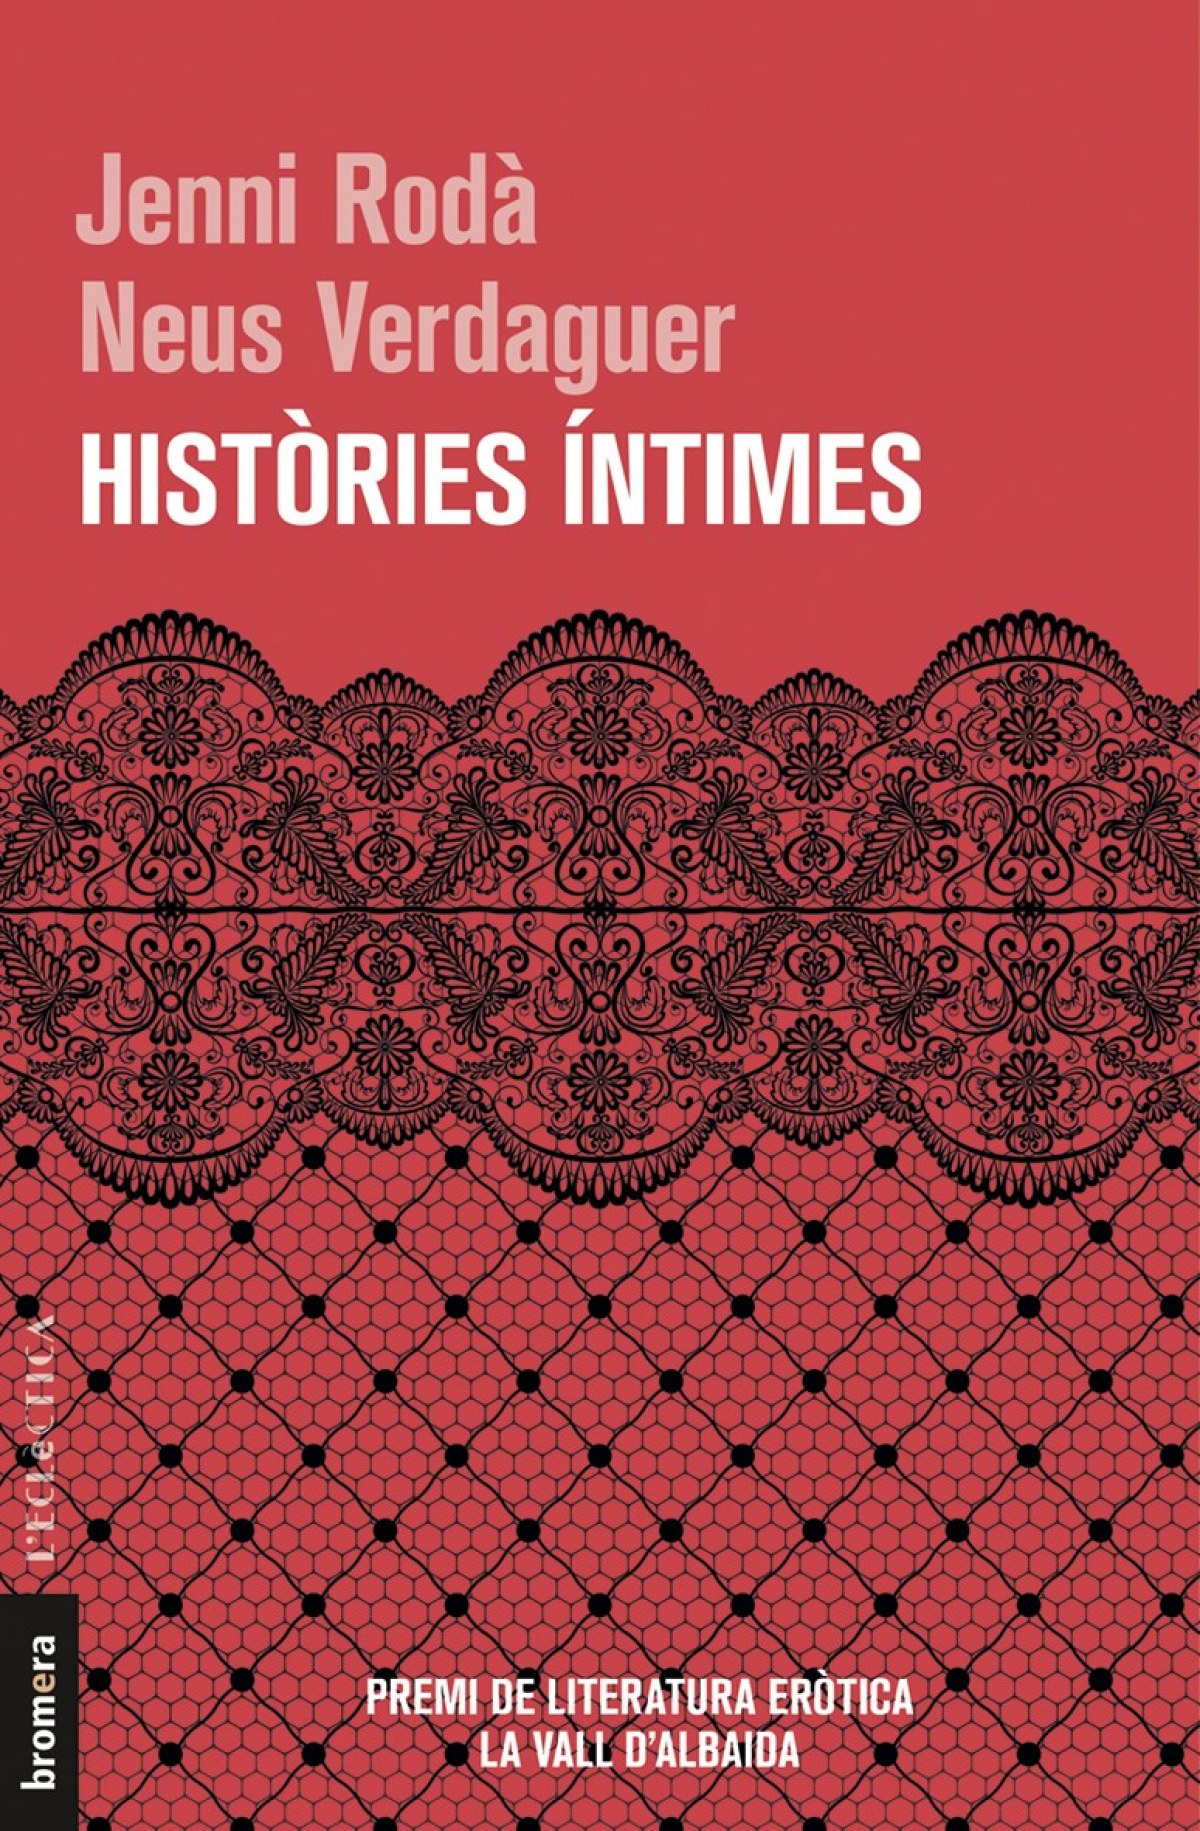 Histories intimes - Roda, Jenni/Verdaguer, Neus